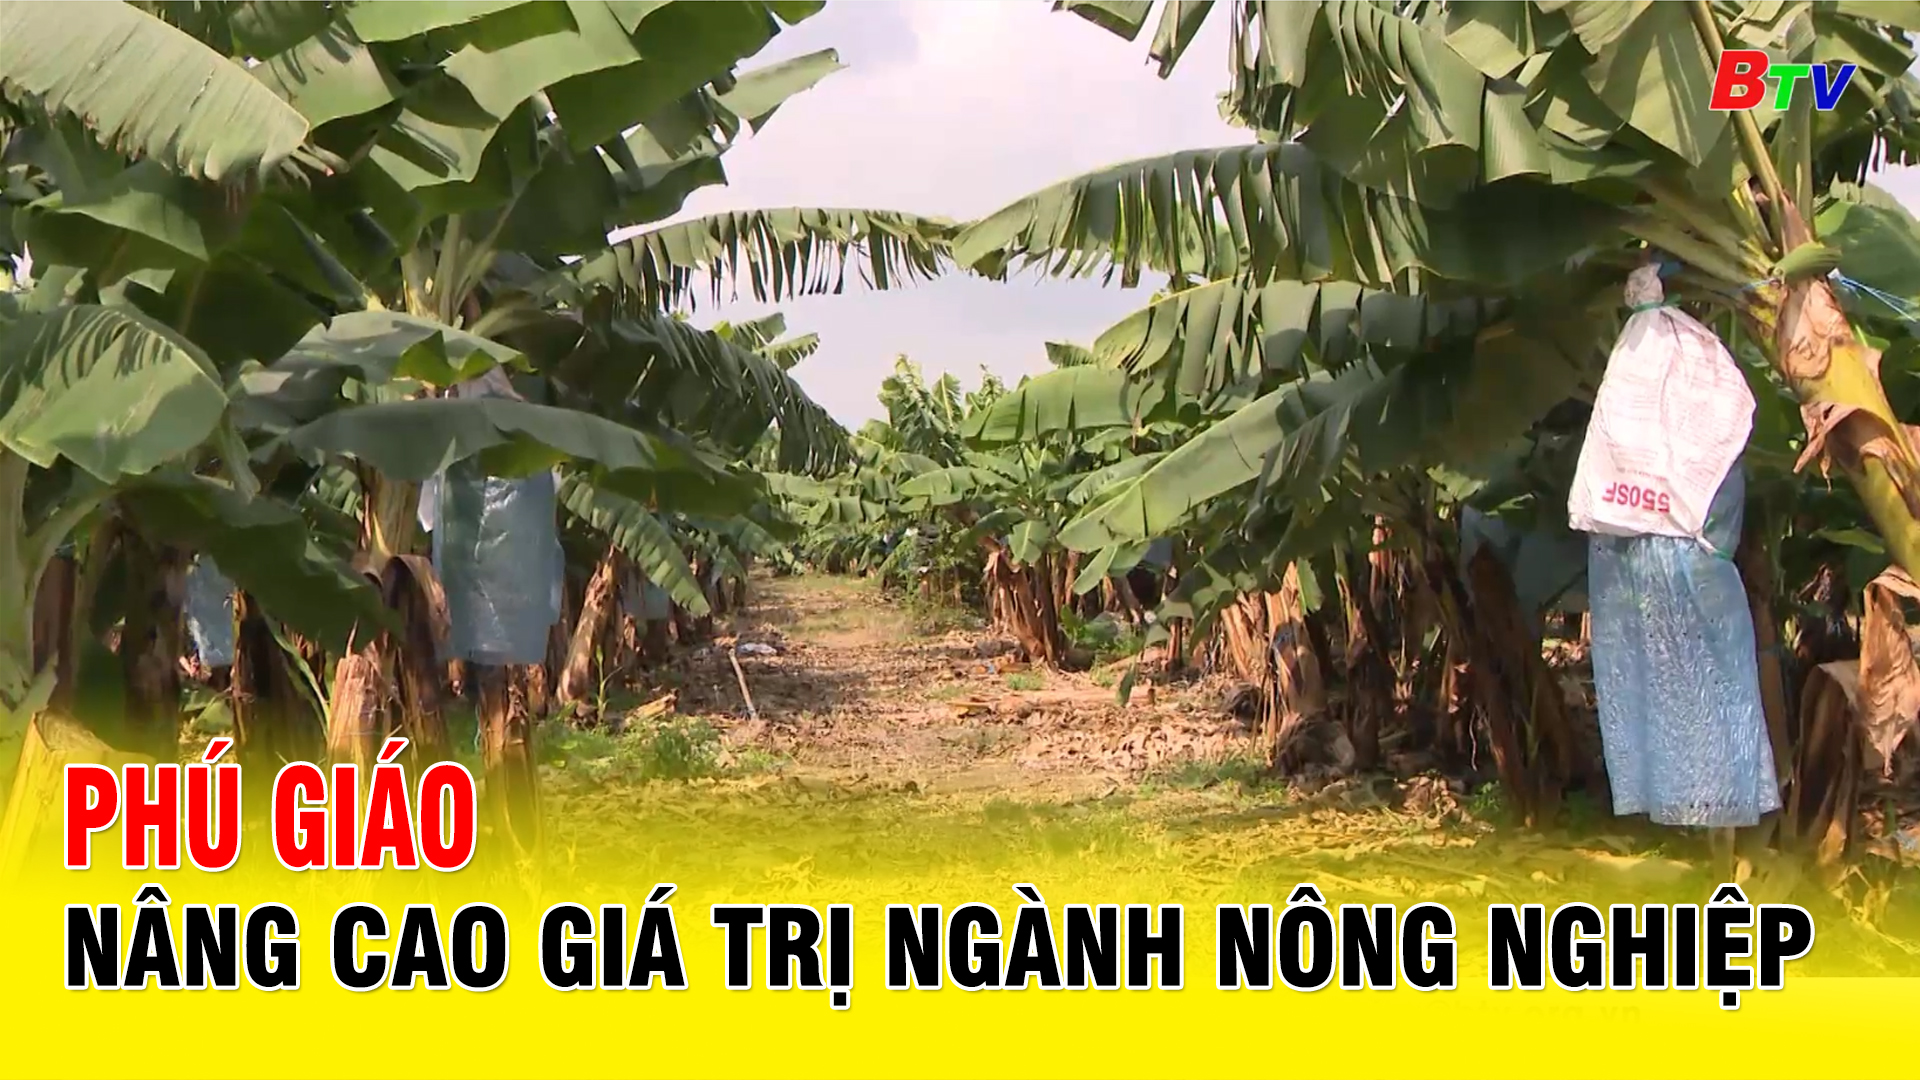 Phú Giáo nâng cao giá trị ngành nông nghiệp